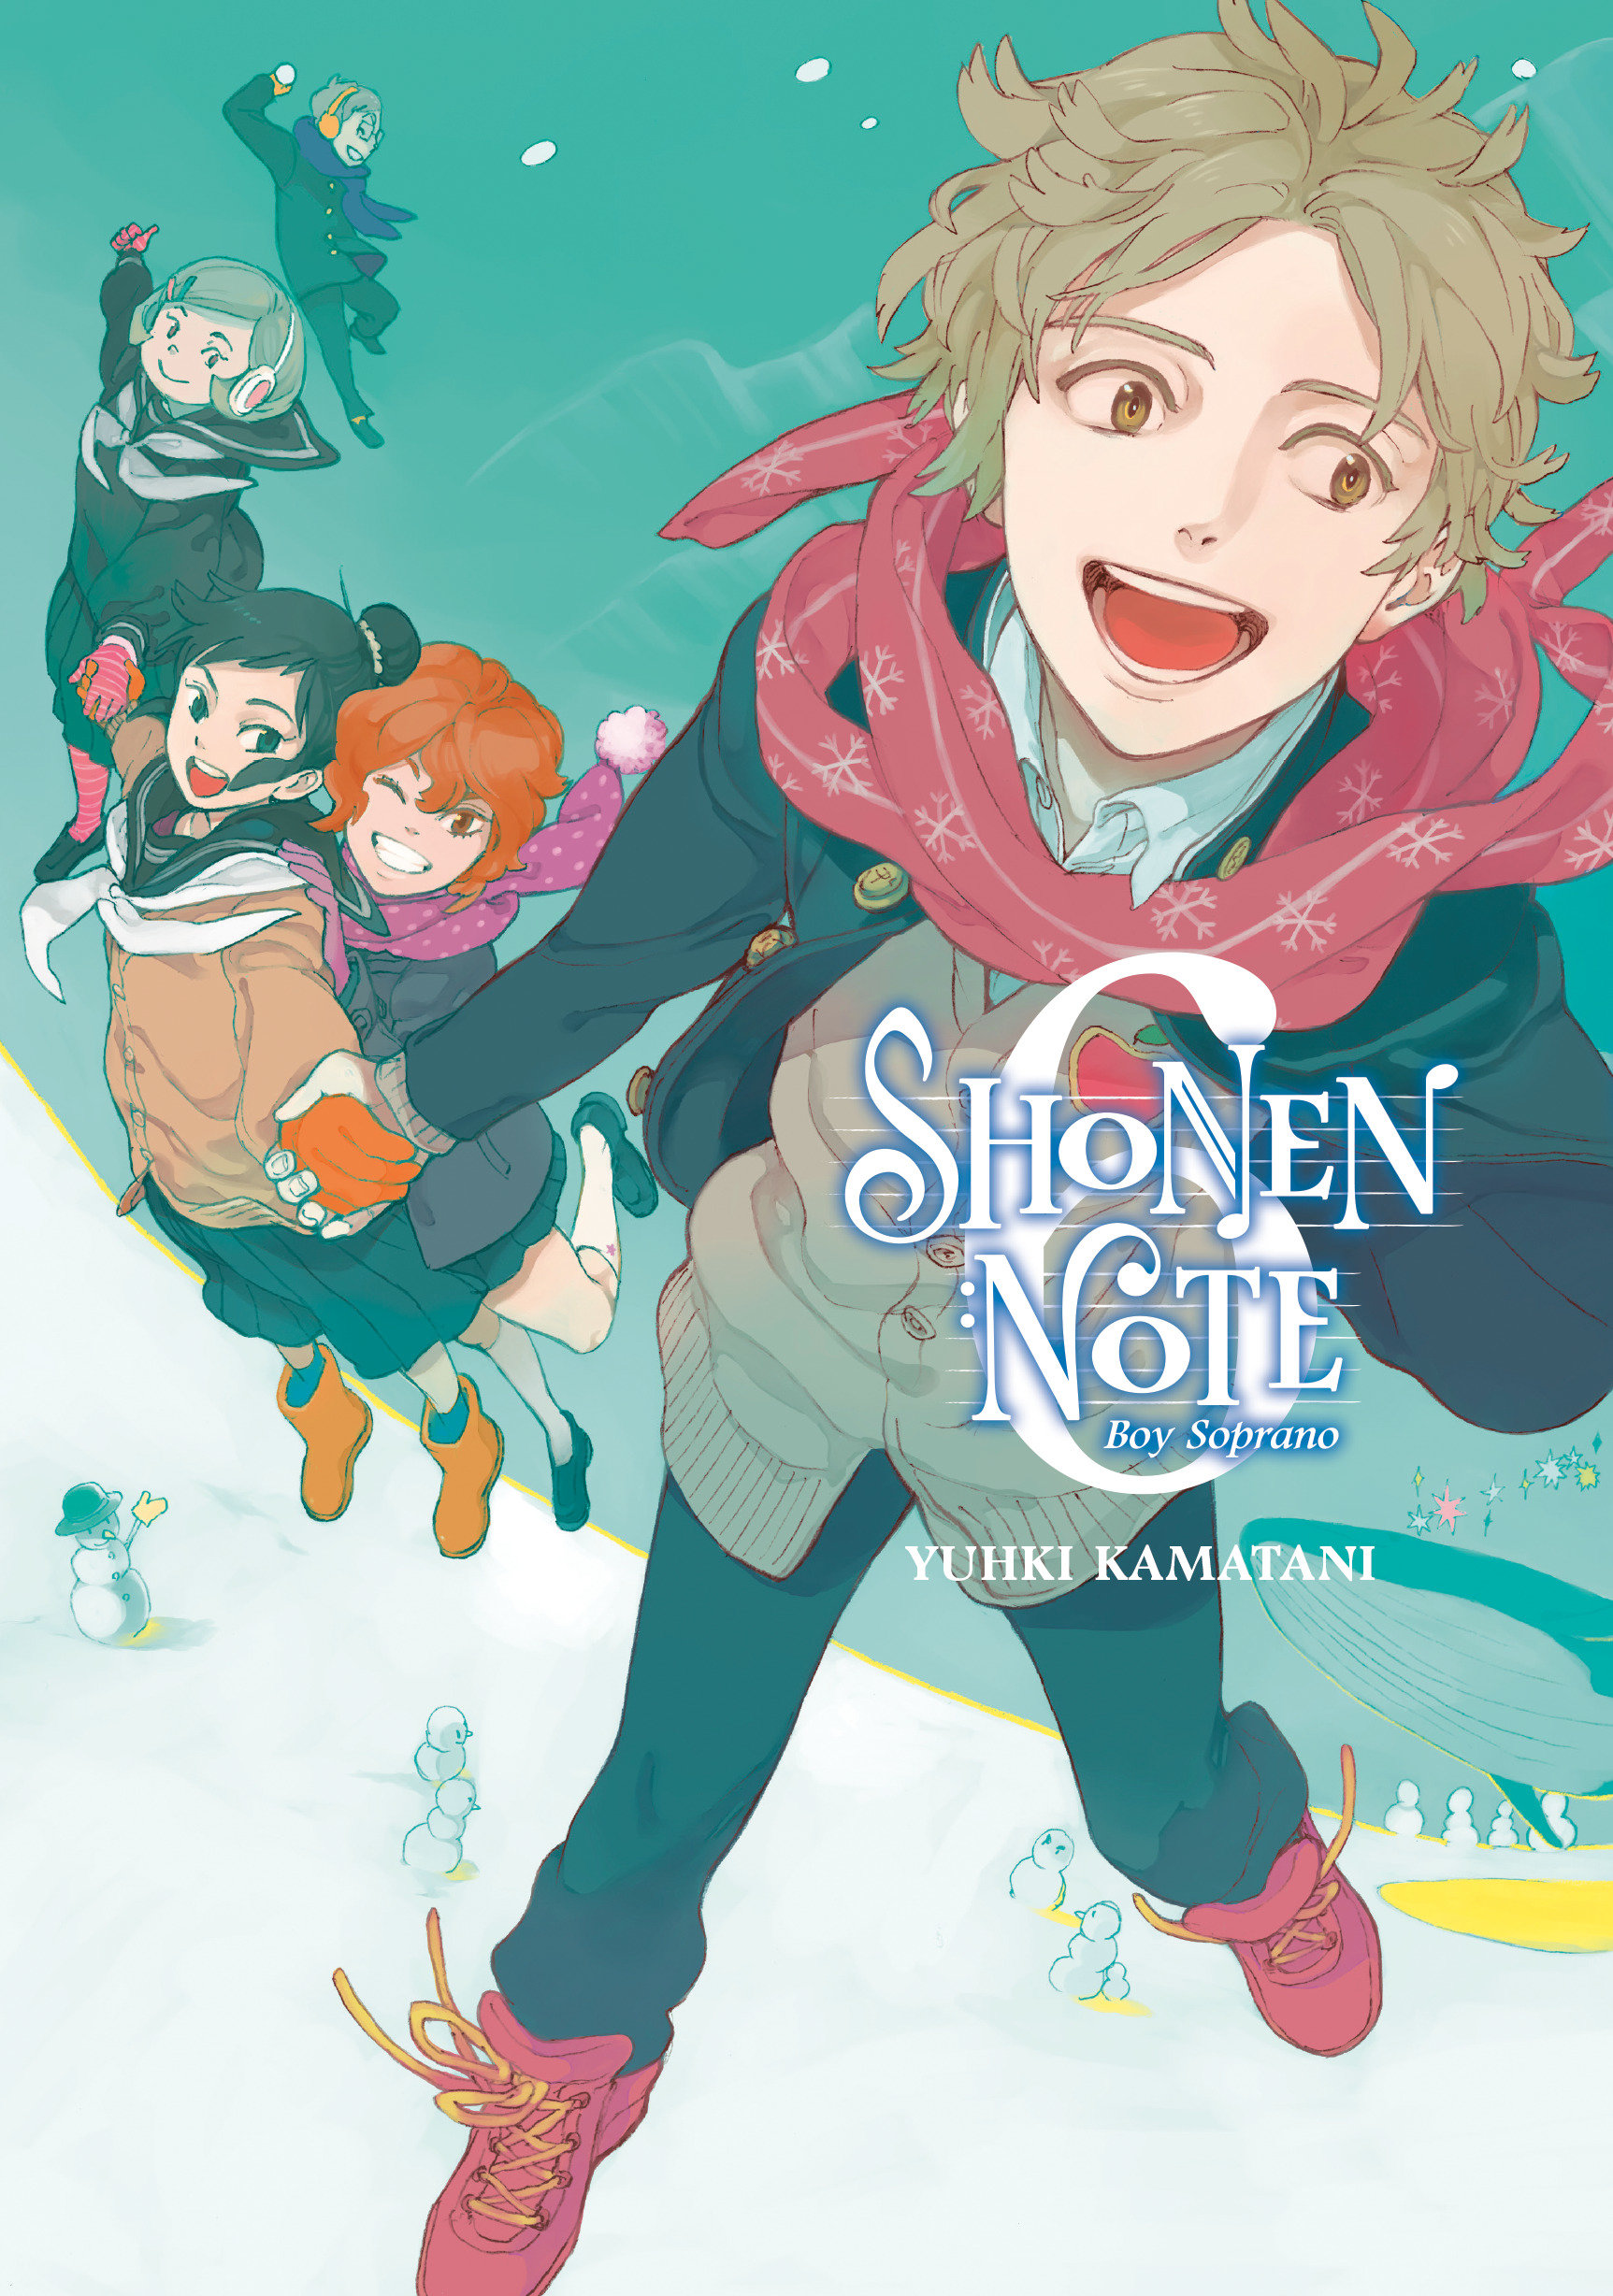 Shonen Note Boy Soprano Manga Volume 6